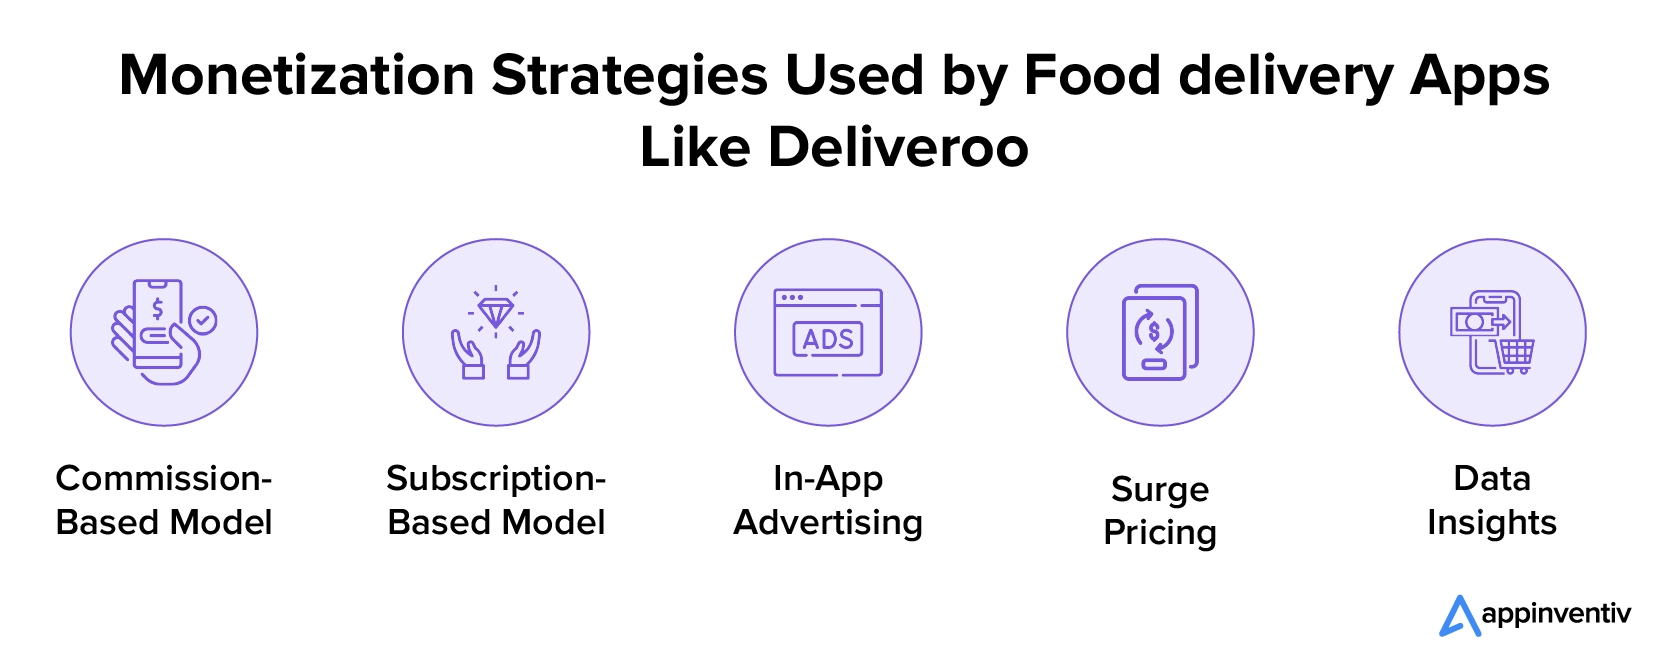 Stratégies de monétisation utilisées par les applications de livraison de nourriture comme Deliveroo